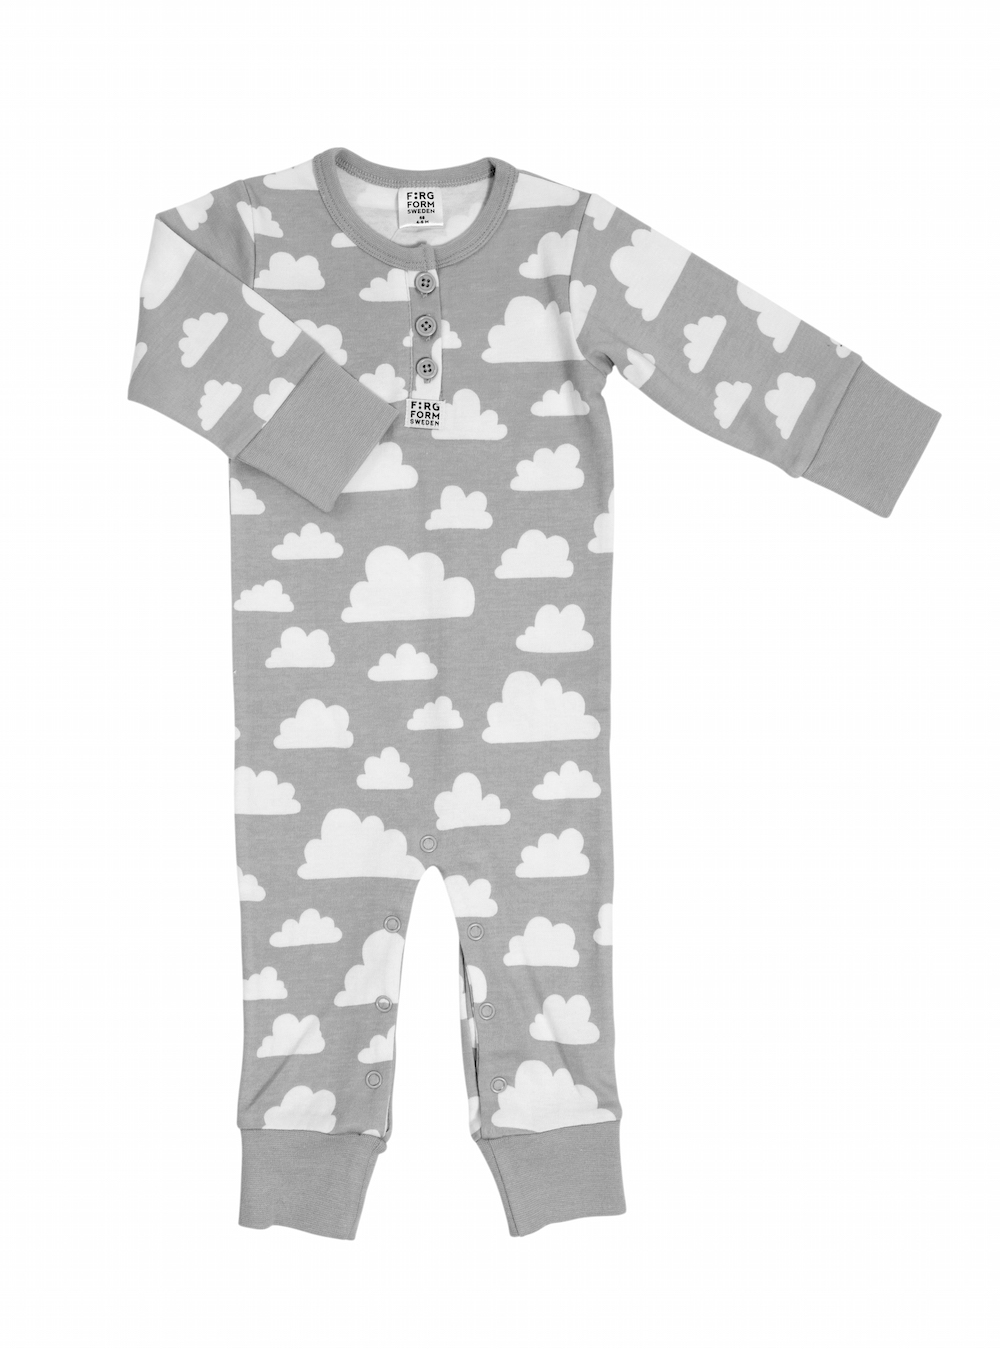 Szürke felhős gyerek pizsama, Farg&Form